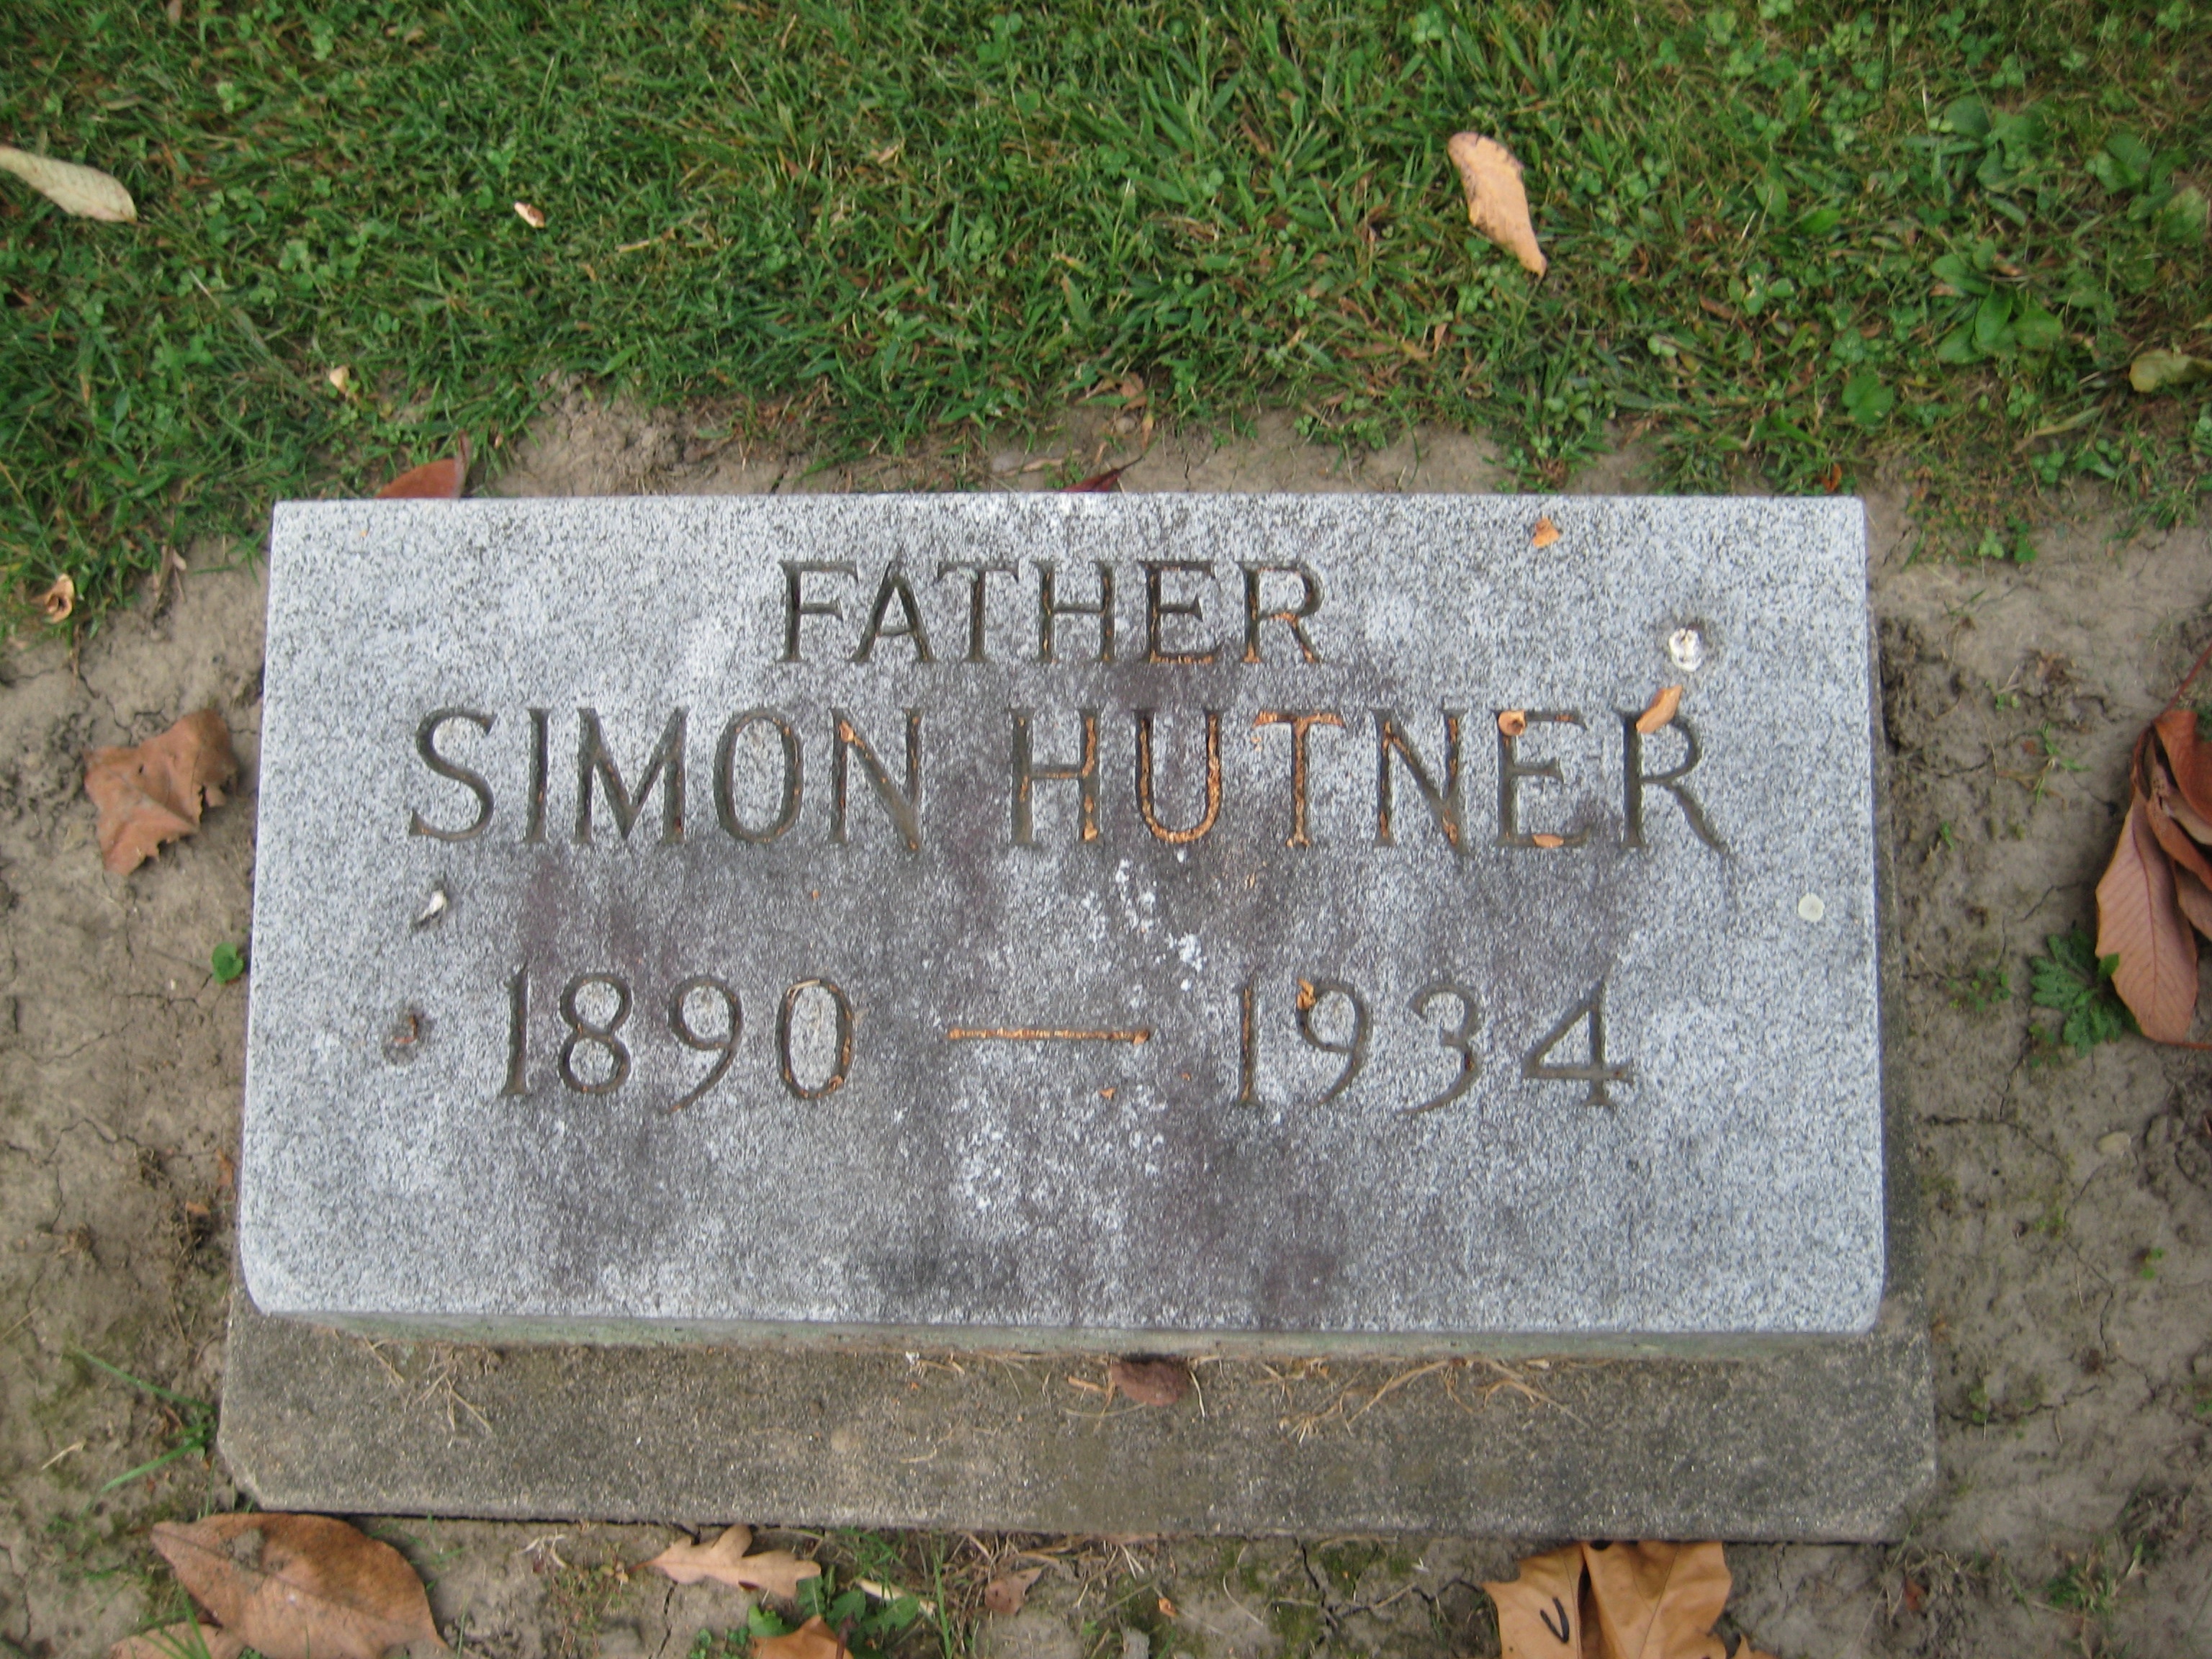 Hutner, Simon